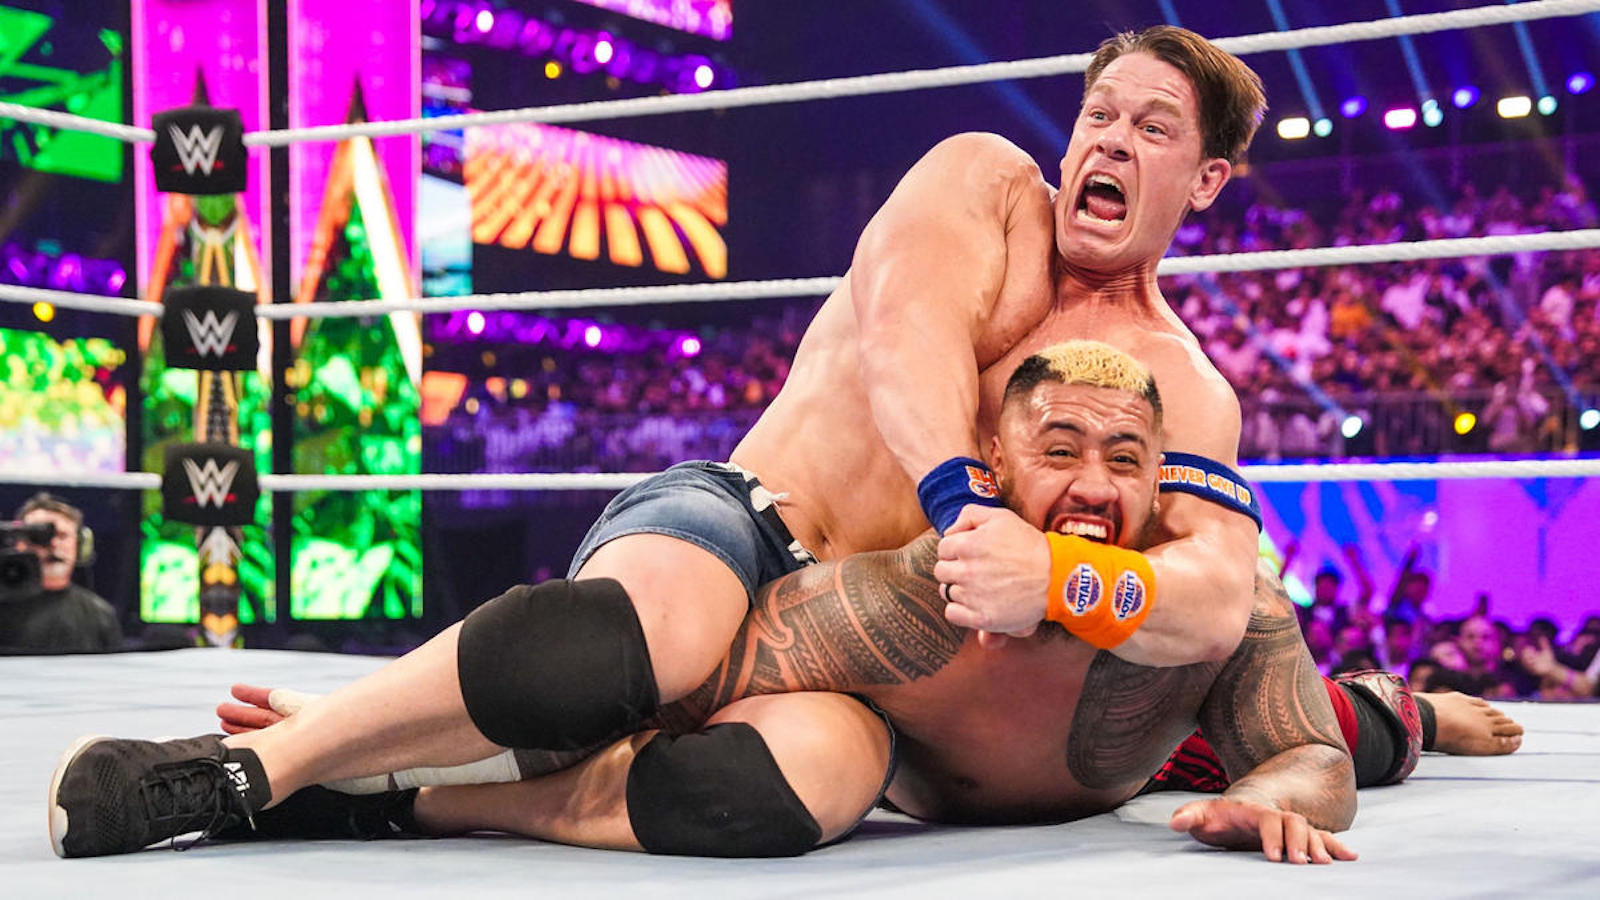 Una publicación críptica de John Cena en Instagram sugiere que WWE Crown Jewel fue su último combate